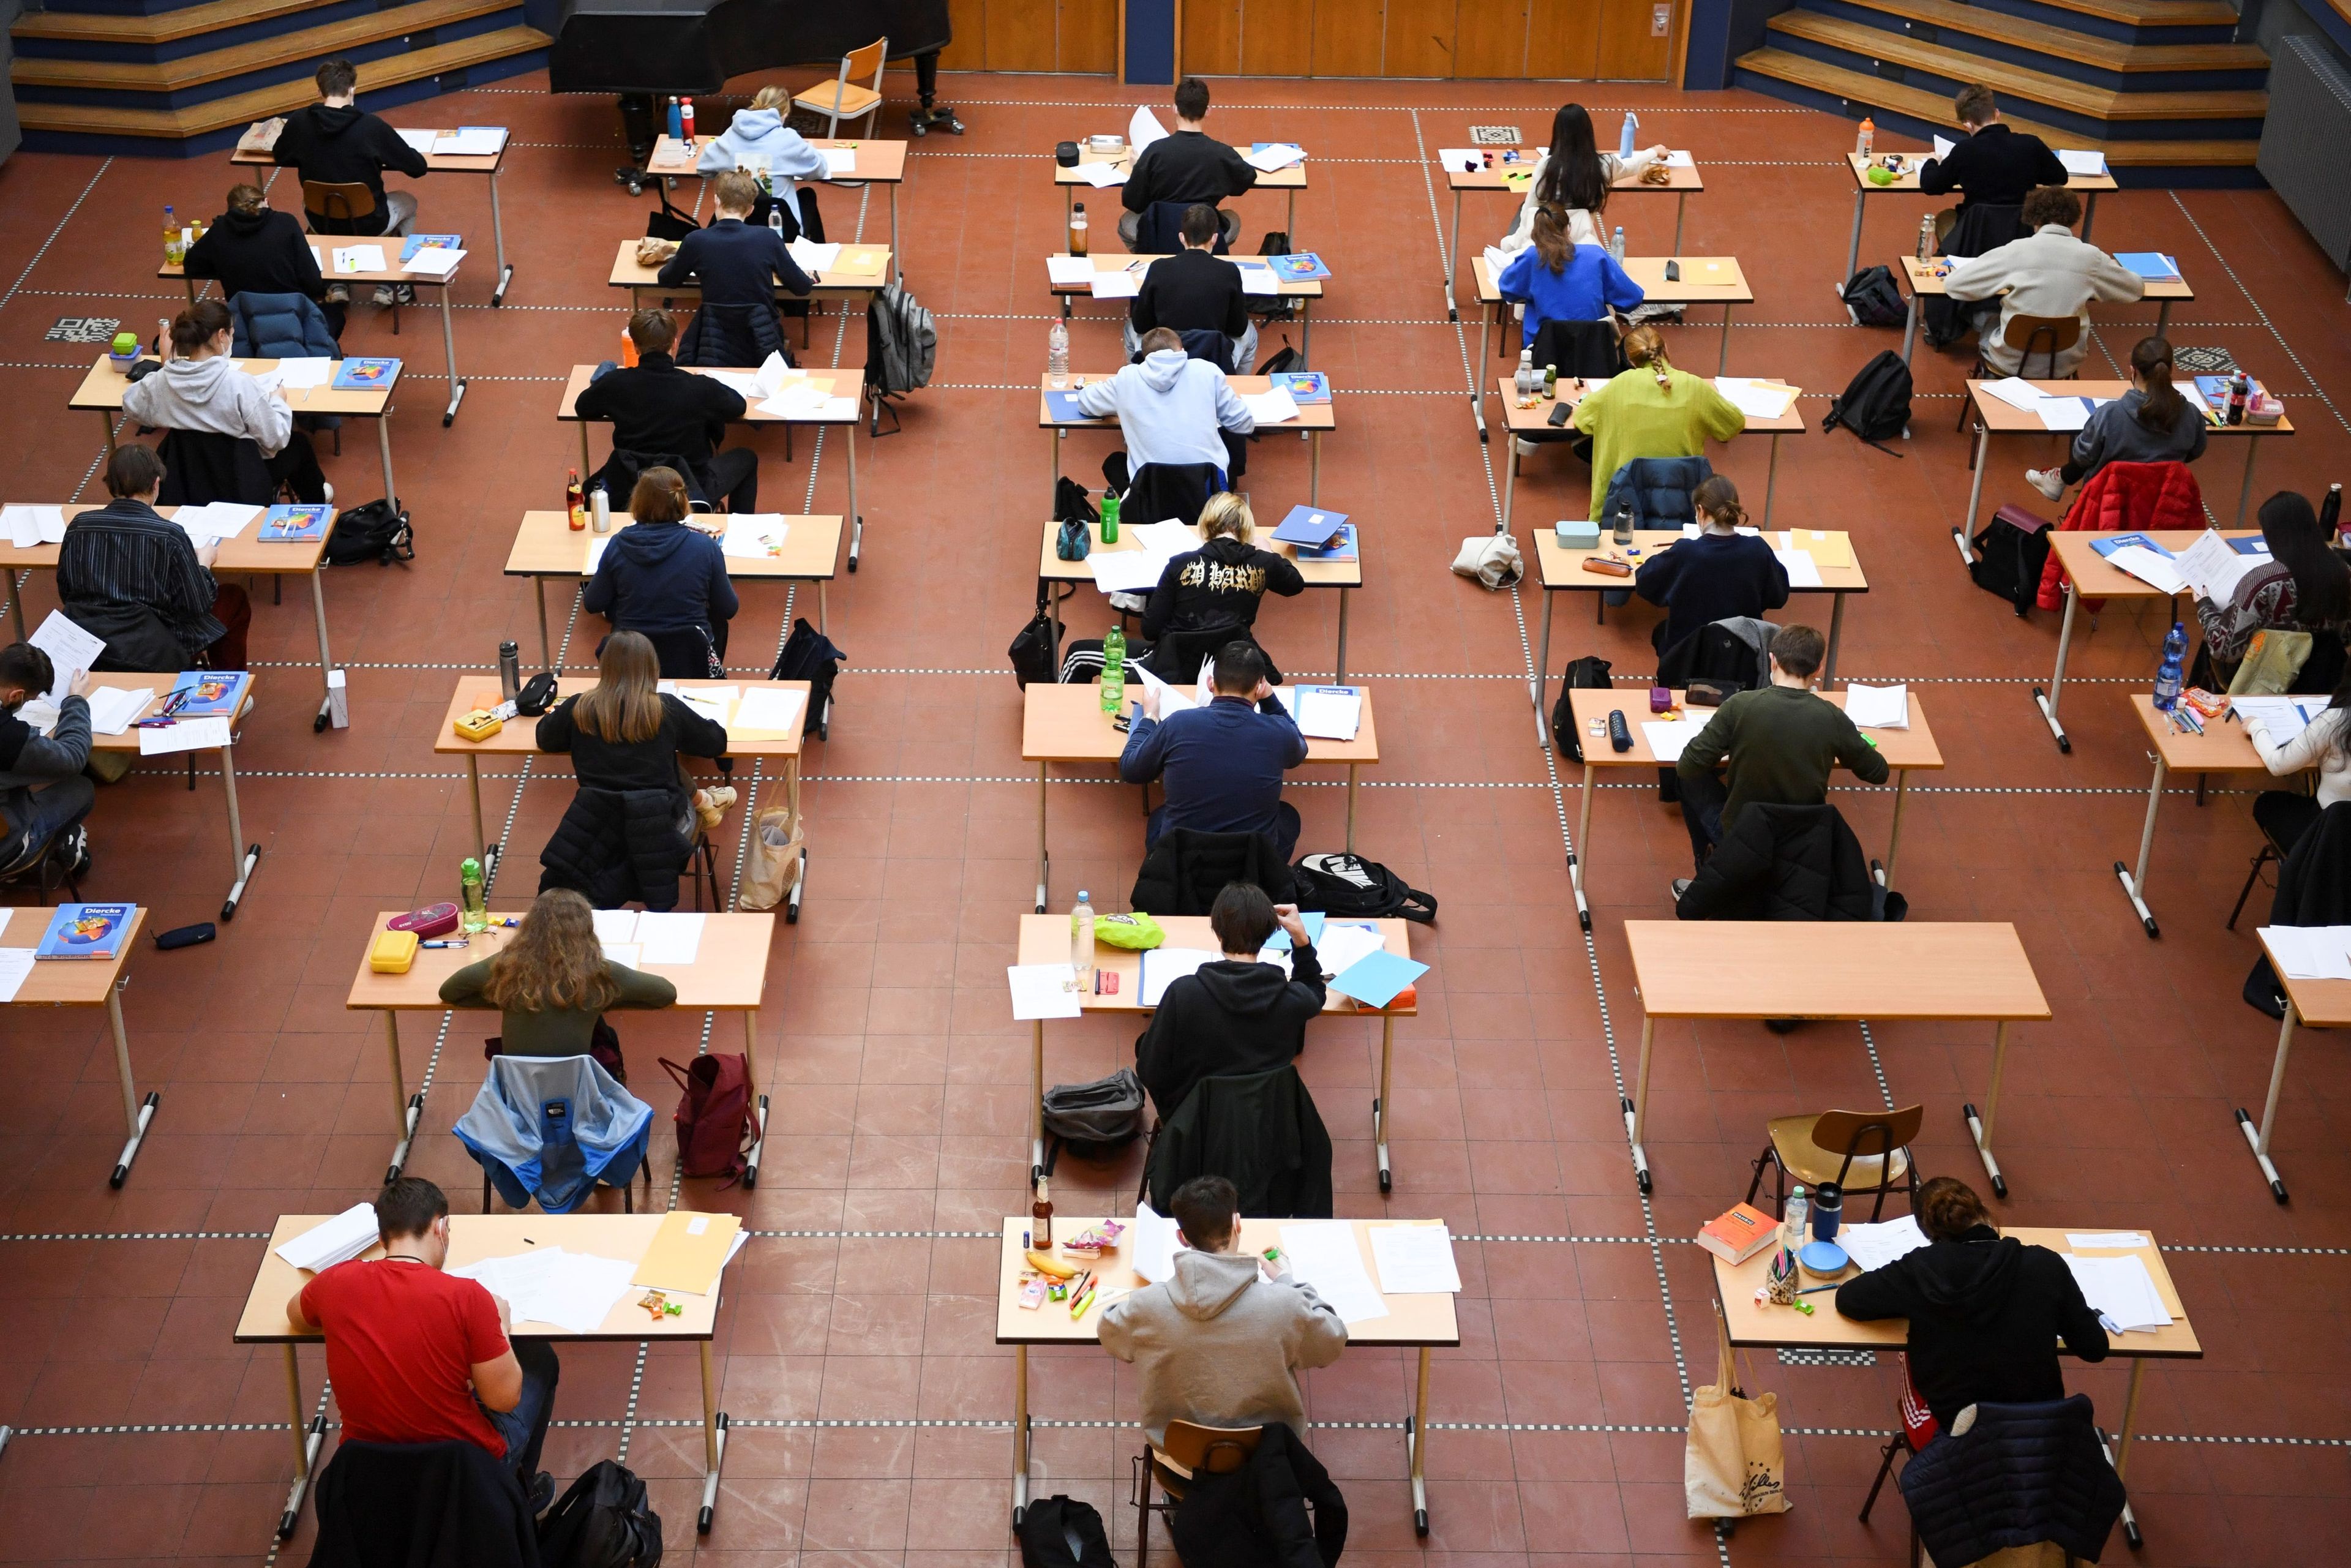 Alumnos haciendo un examen durante la pandemia